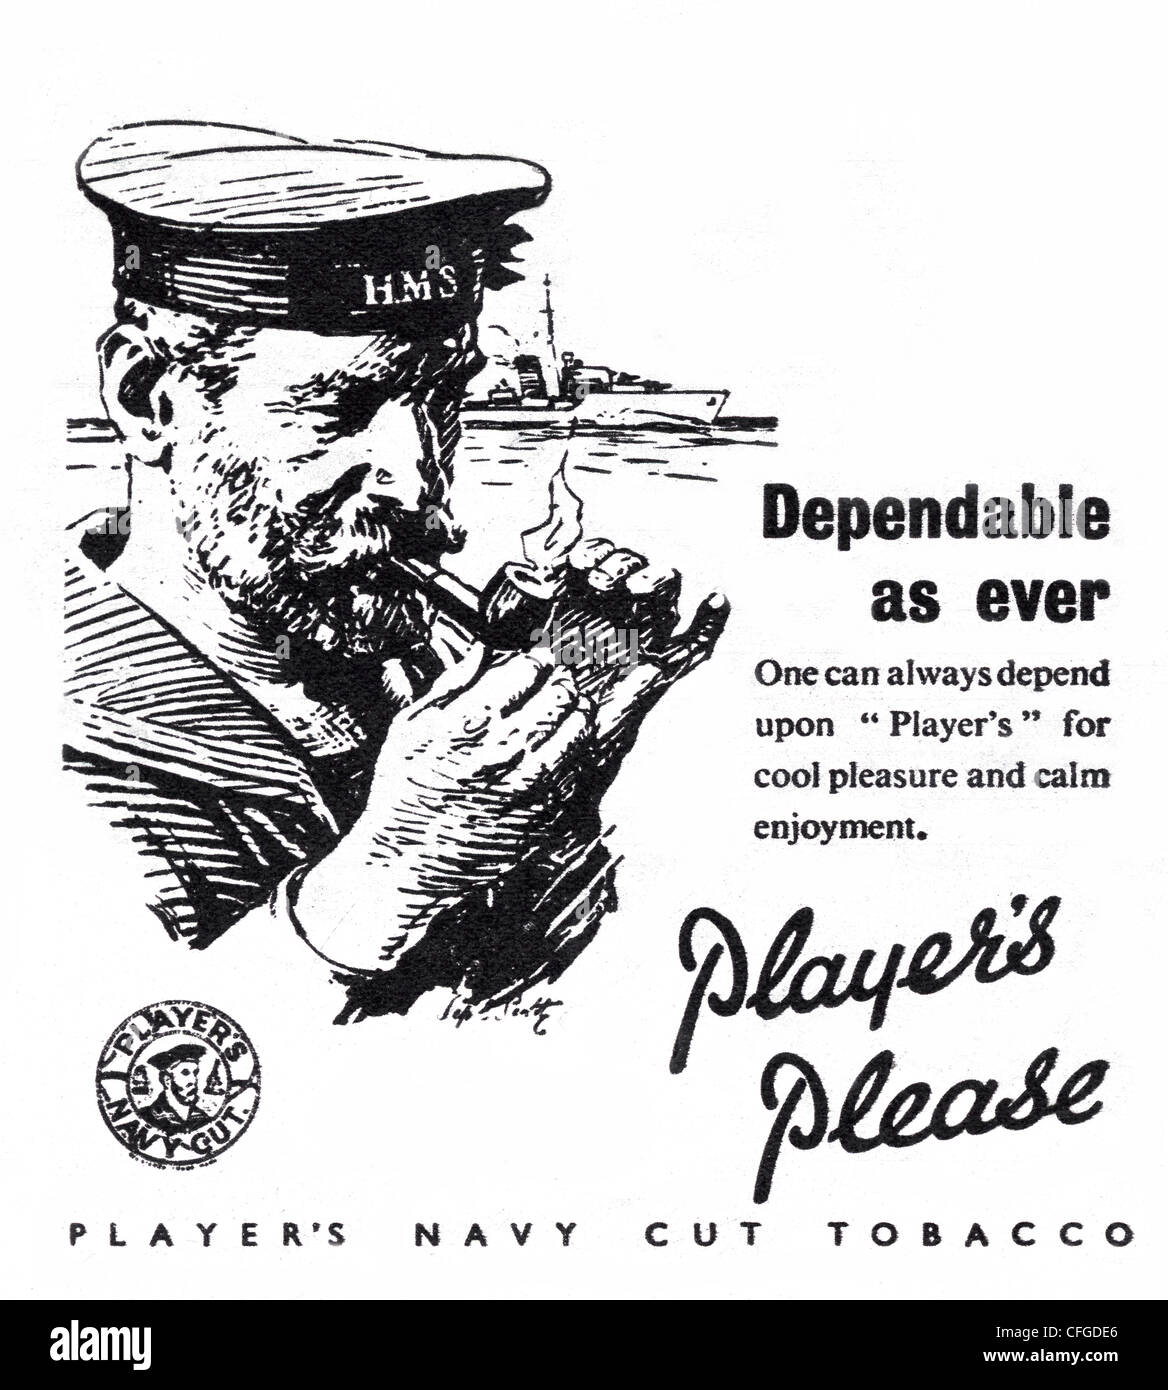 I giocatori Airman Navy Cut pubblicità del tabacco dal 1946 Foto Stock